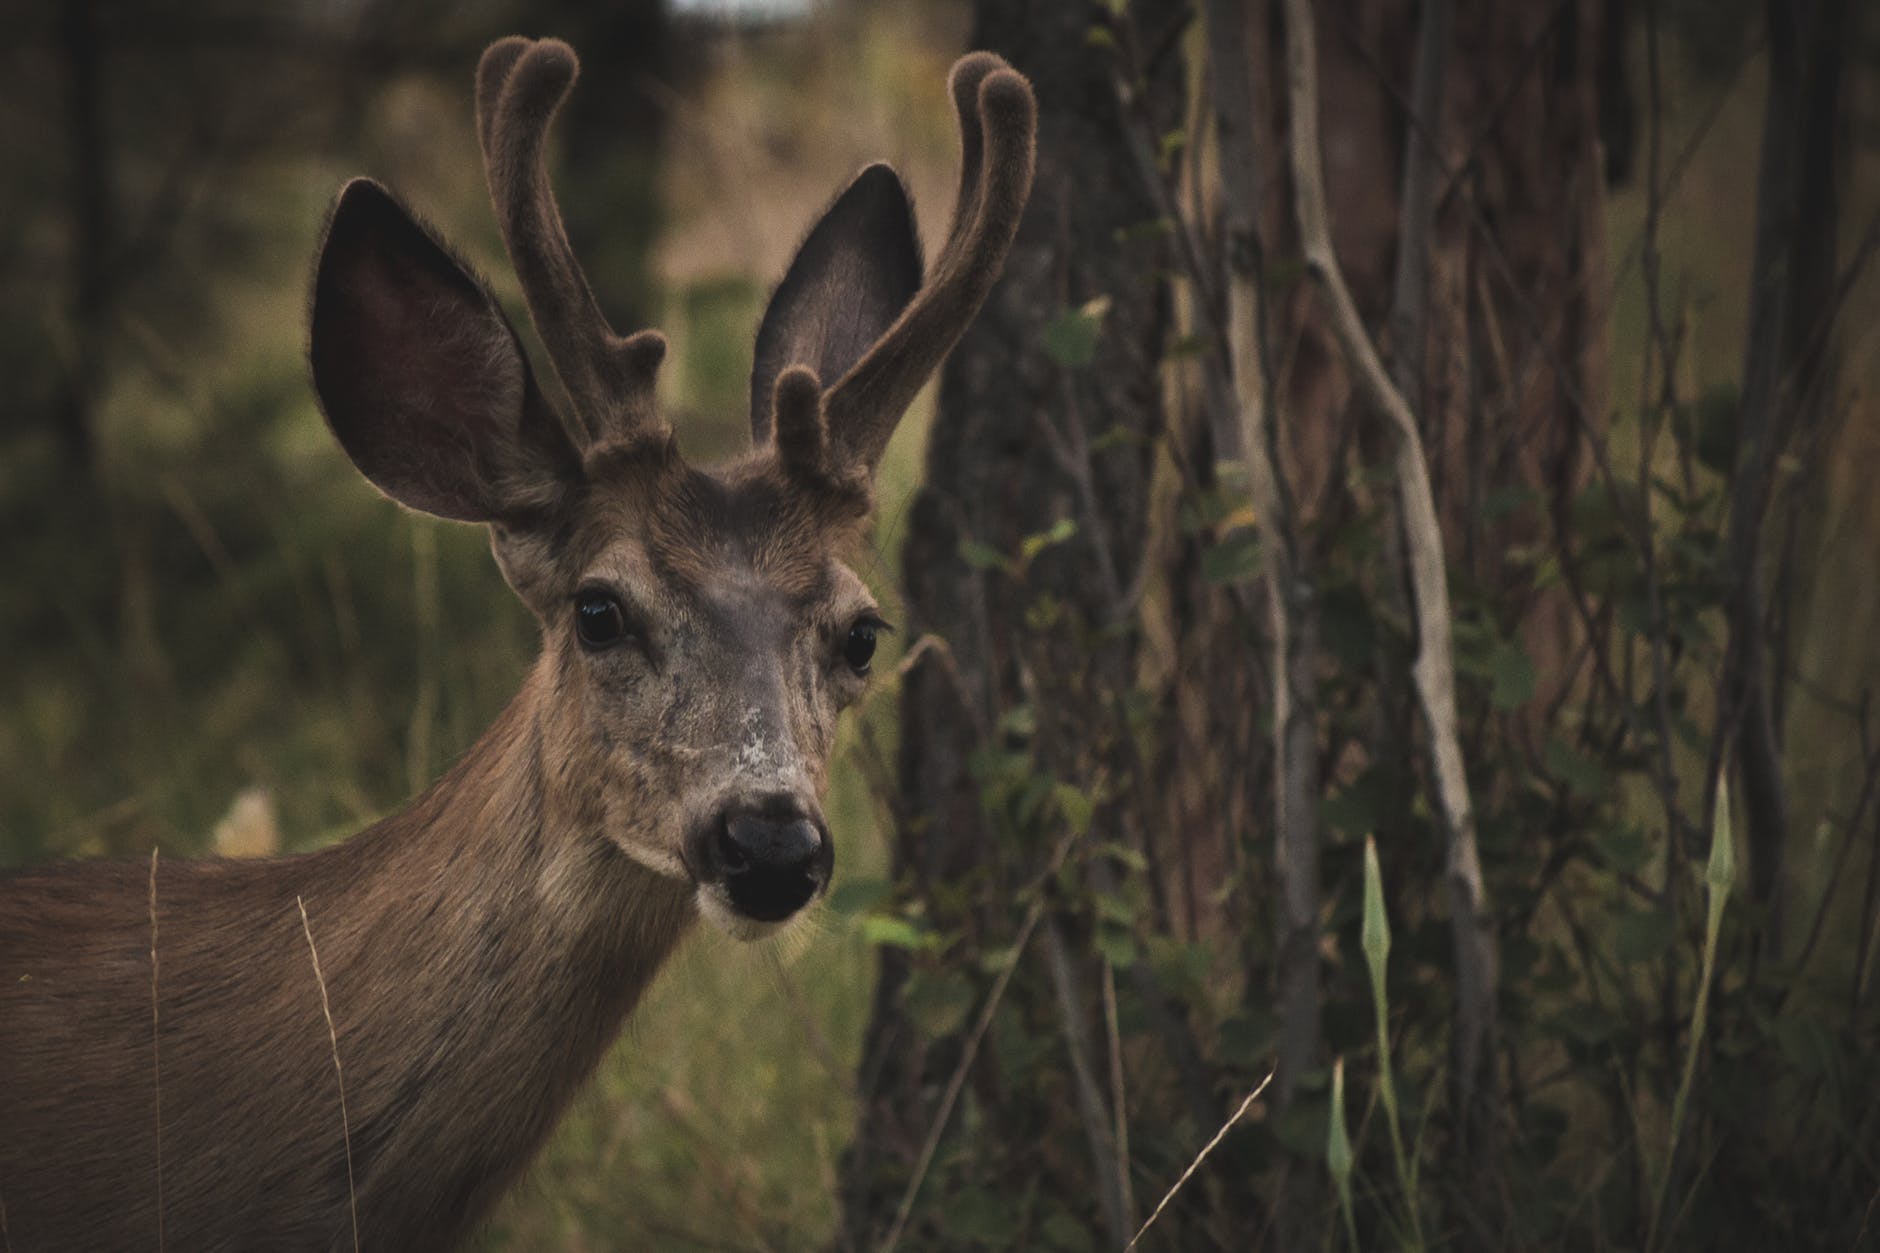 Deer antlers – a sometimes impressive sight!